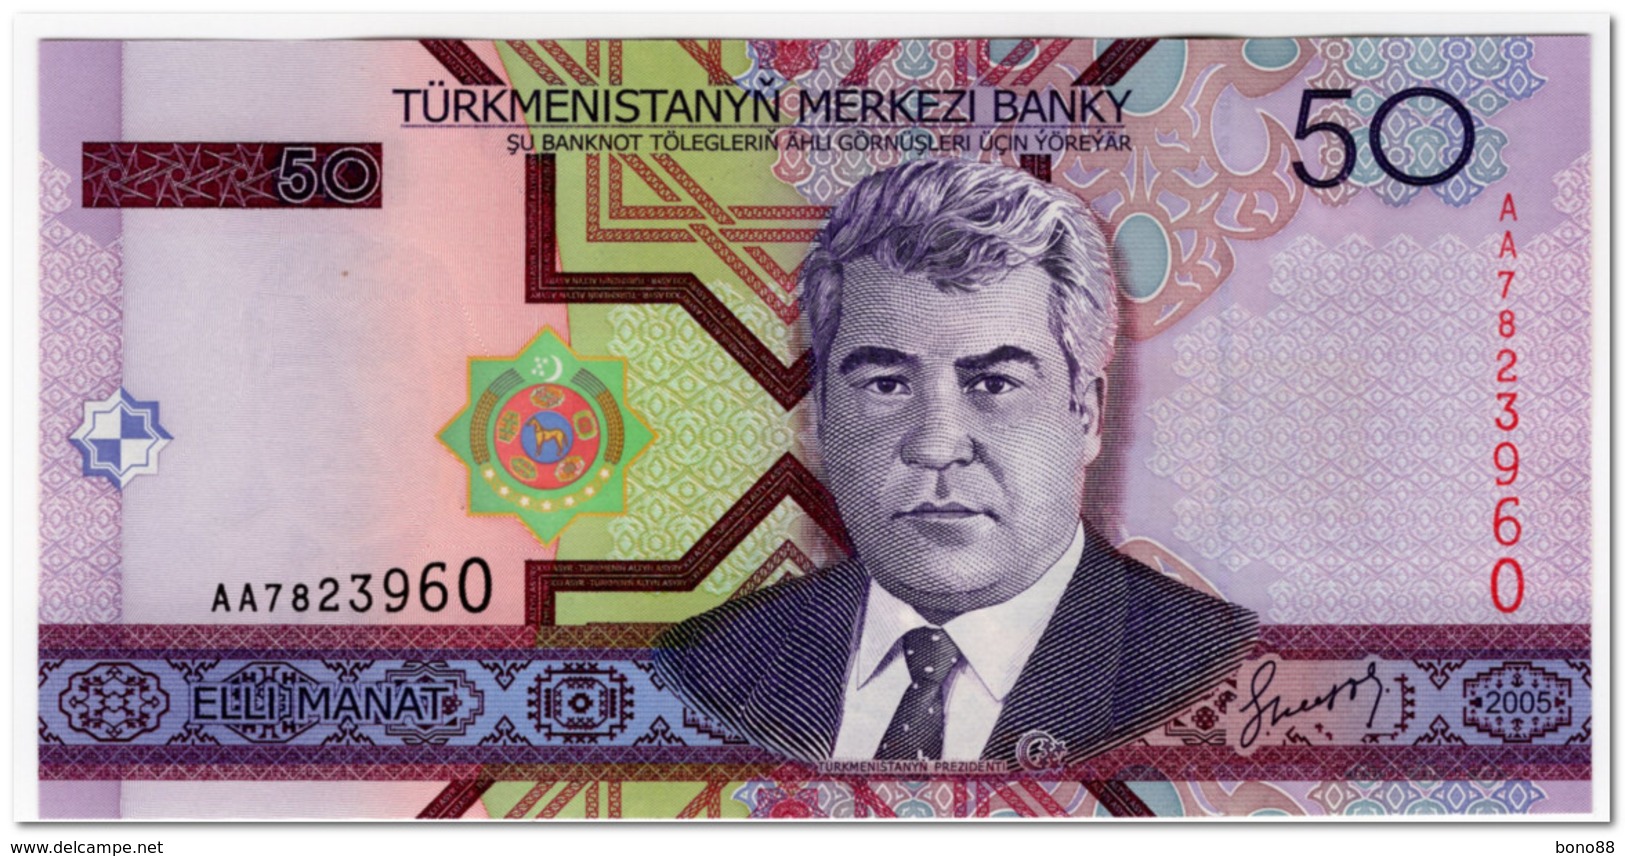 TURKMENISTAN,50 MANAT,2005,P.17,UNC - Turkménistan